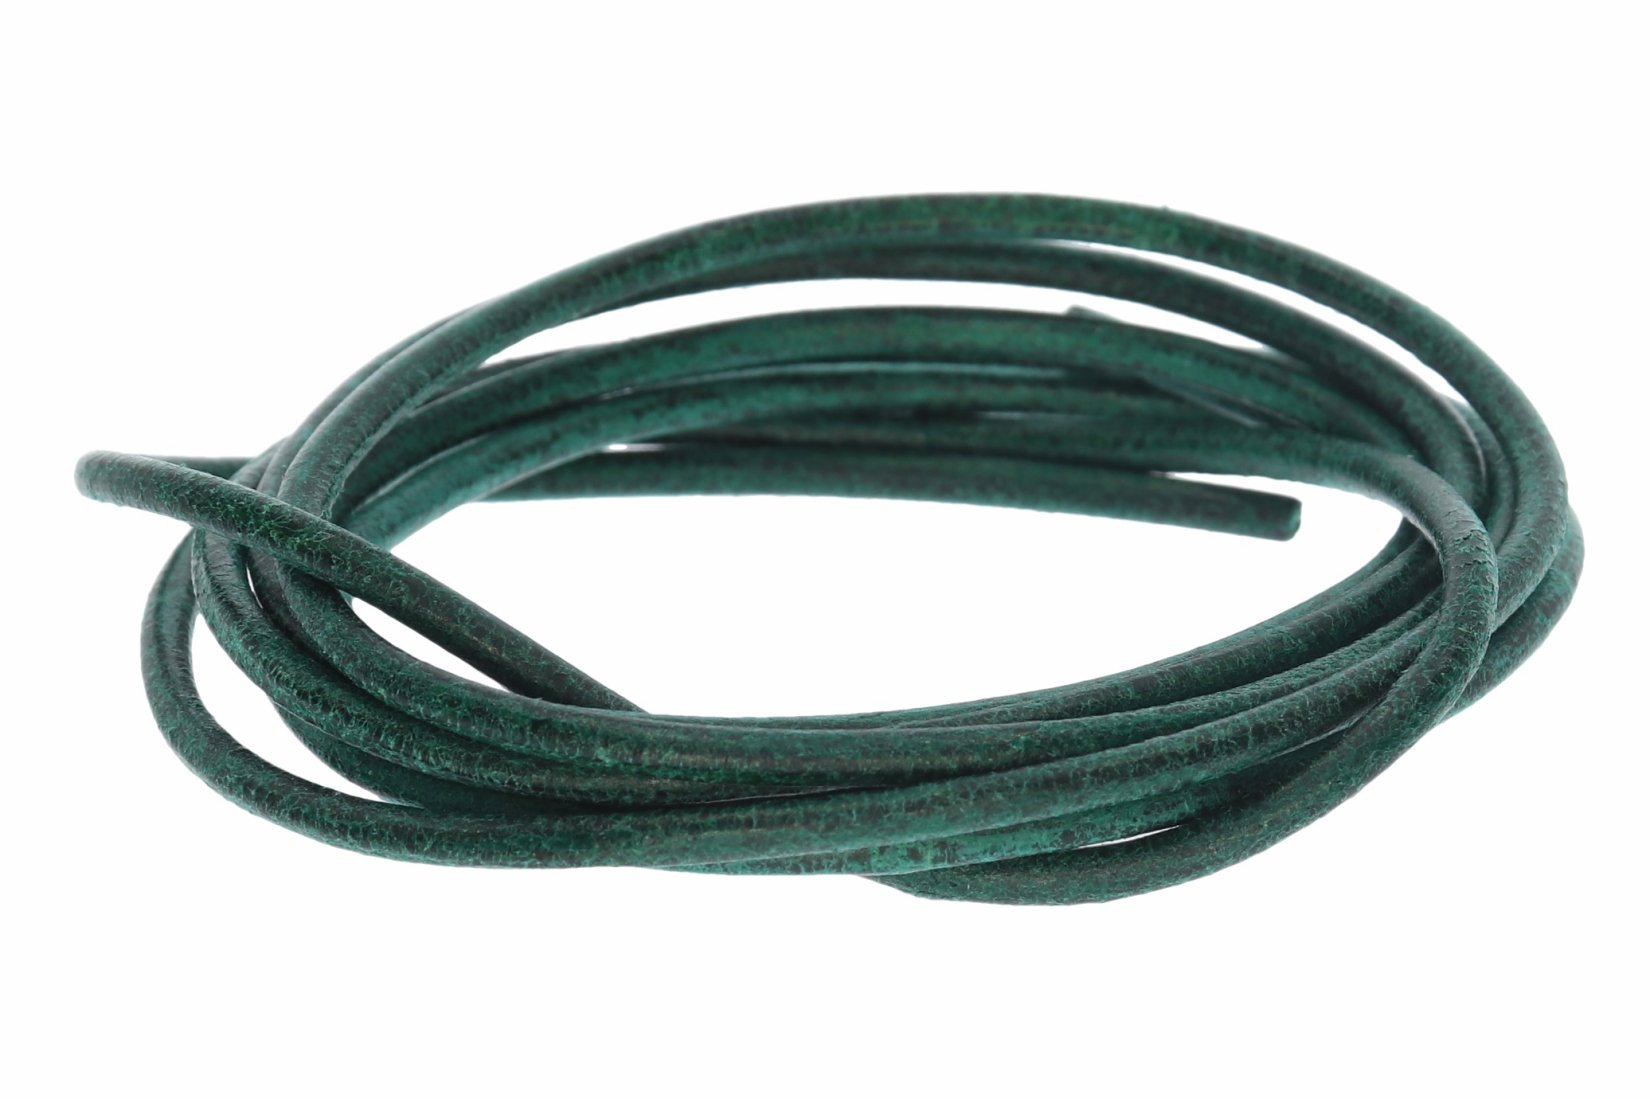 Lederband dunkel grün -  Lederbänder Lederriemen Lederschnur 2 mm Ø - 100cm L211